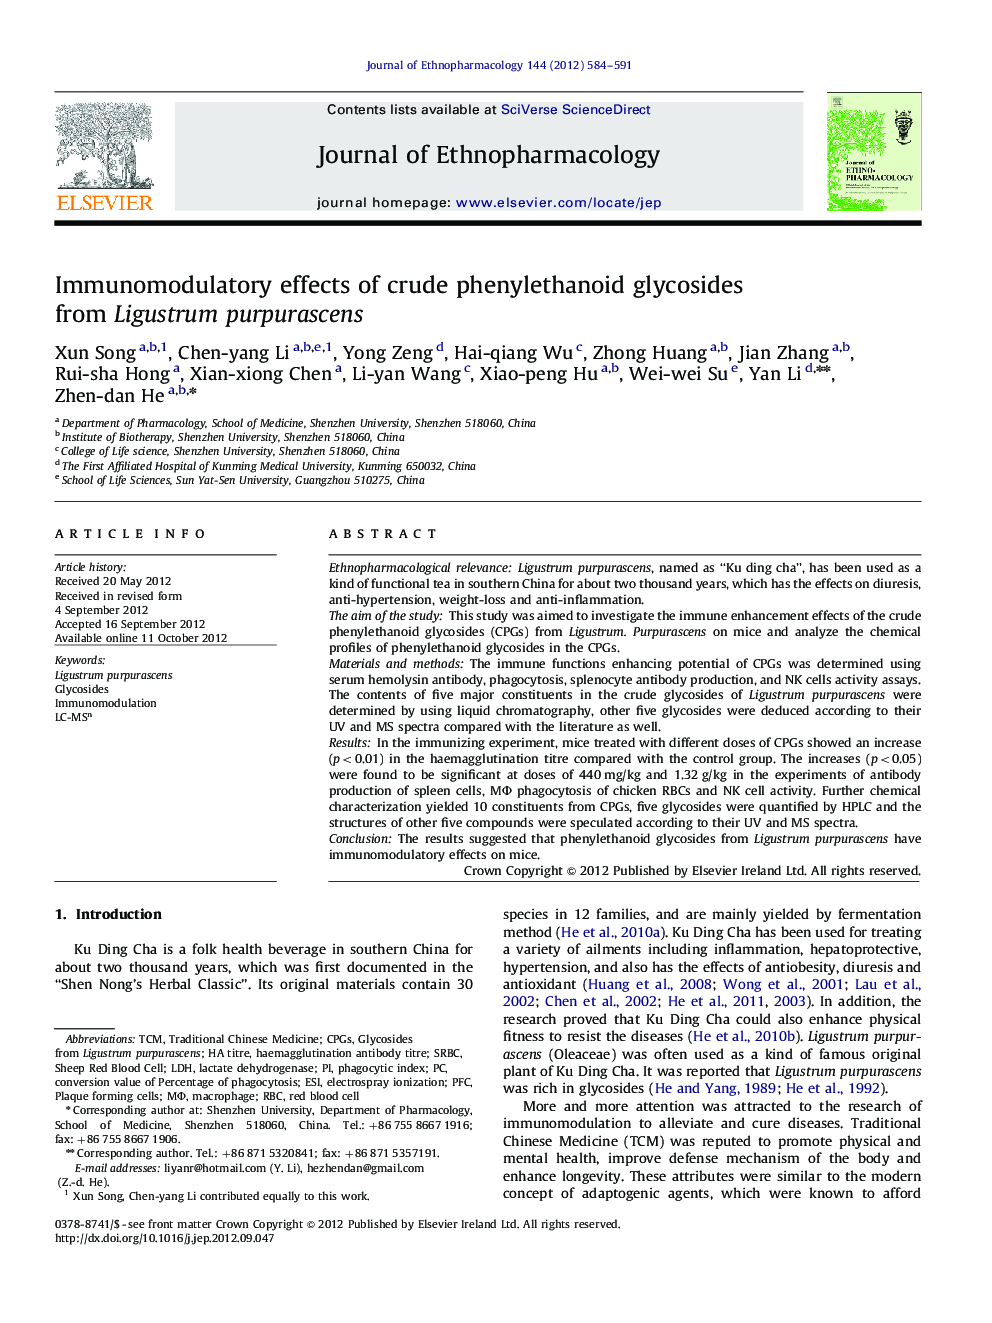 Immunomodulatory effects of crude phenylethanoid glycosides from Ligustrum purpurascens